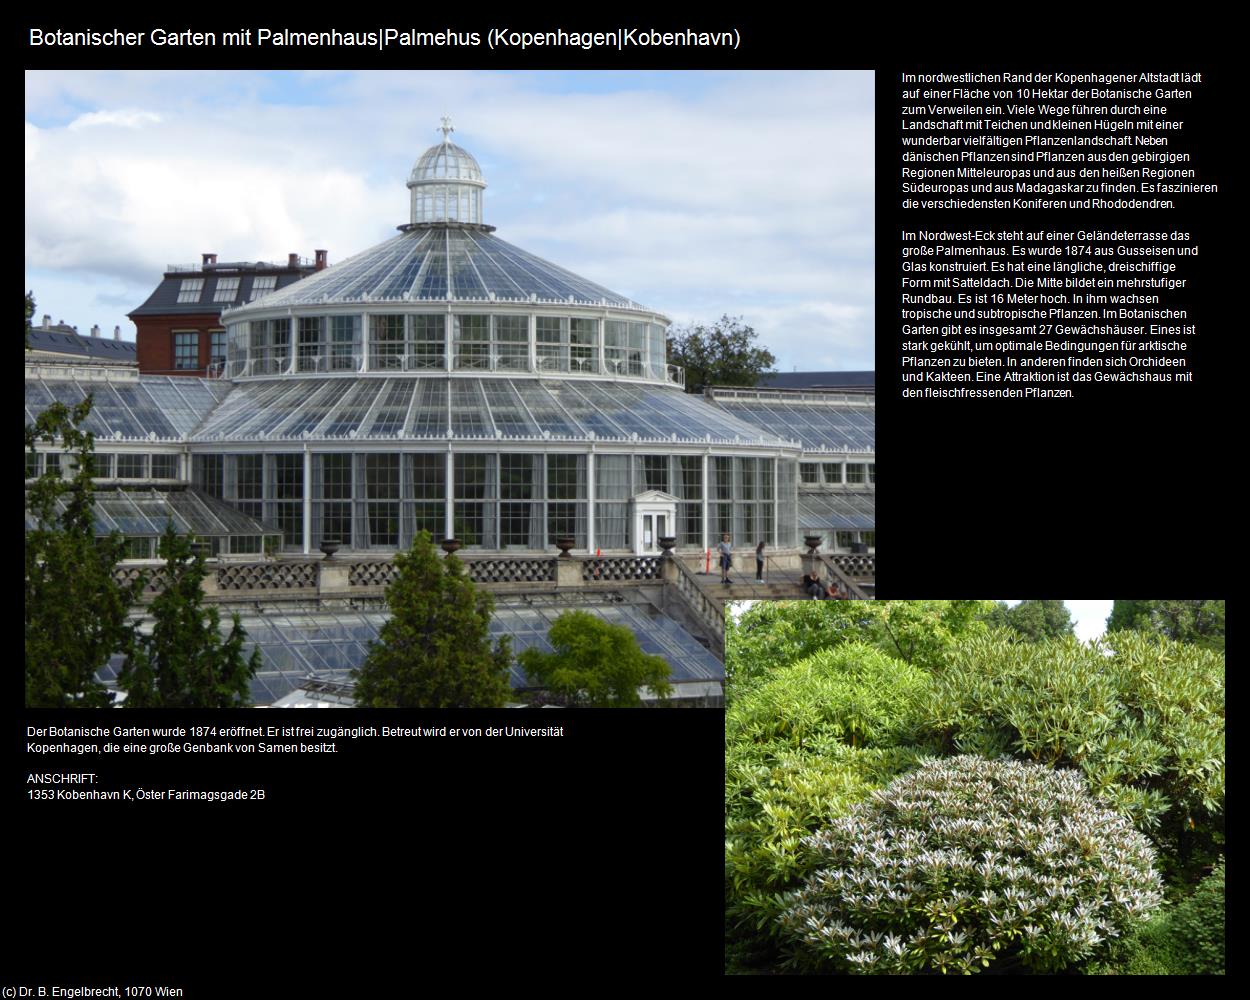 Botanischer Garten mit Palmenhaus (Kopenhagen|Köbenhavn) in Kulturatlas-REISE nach NORWEGEN